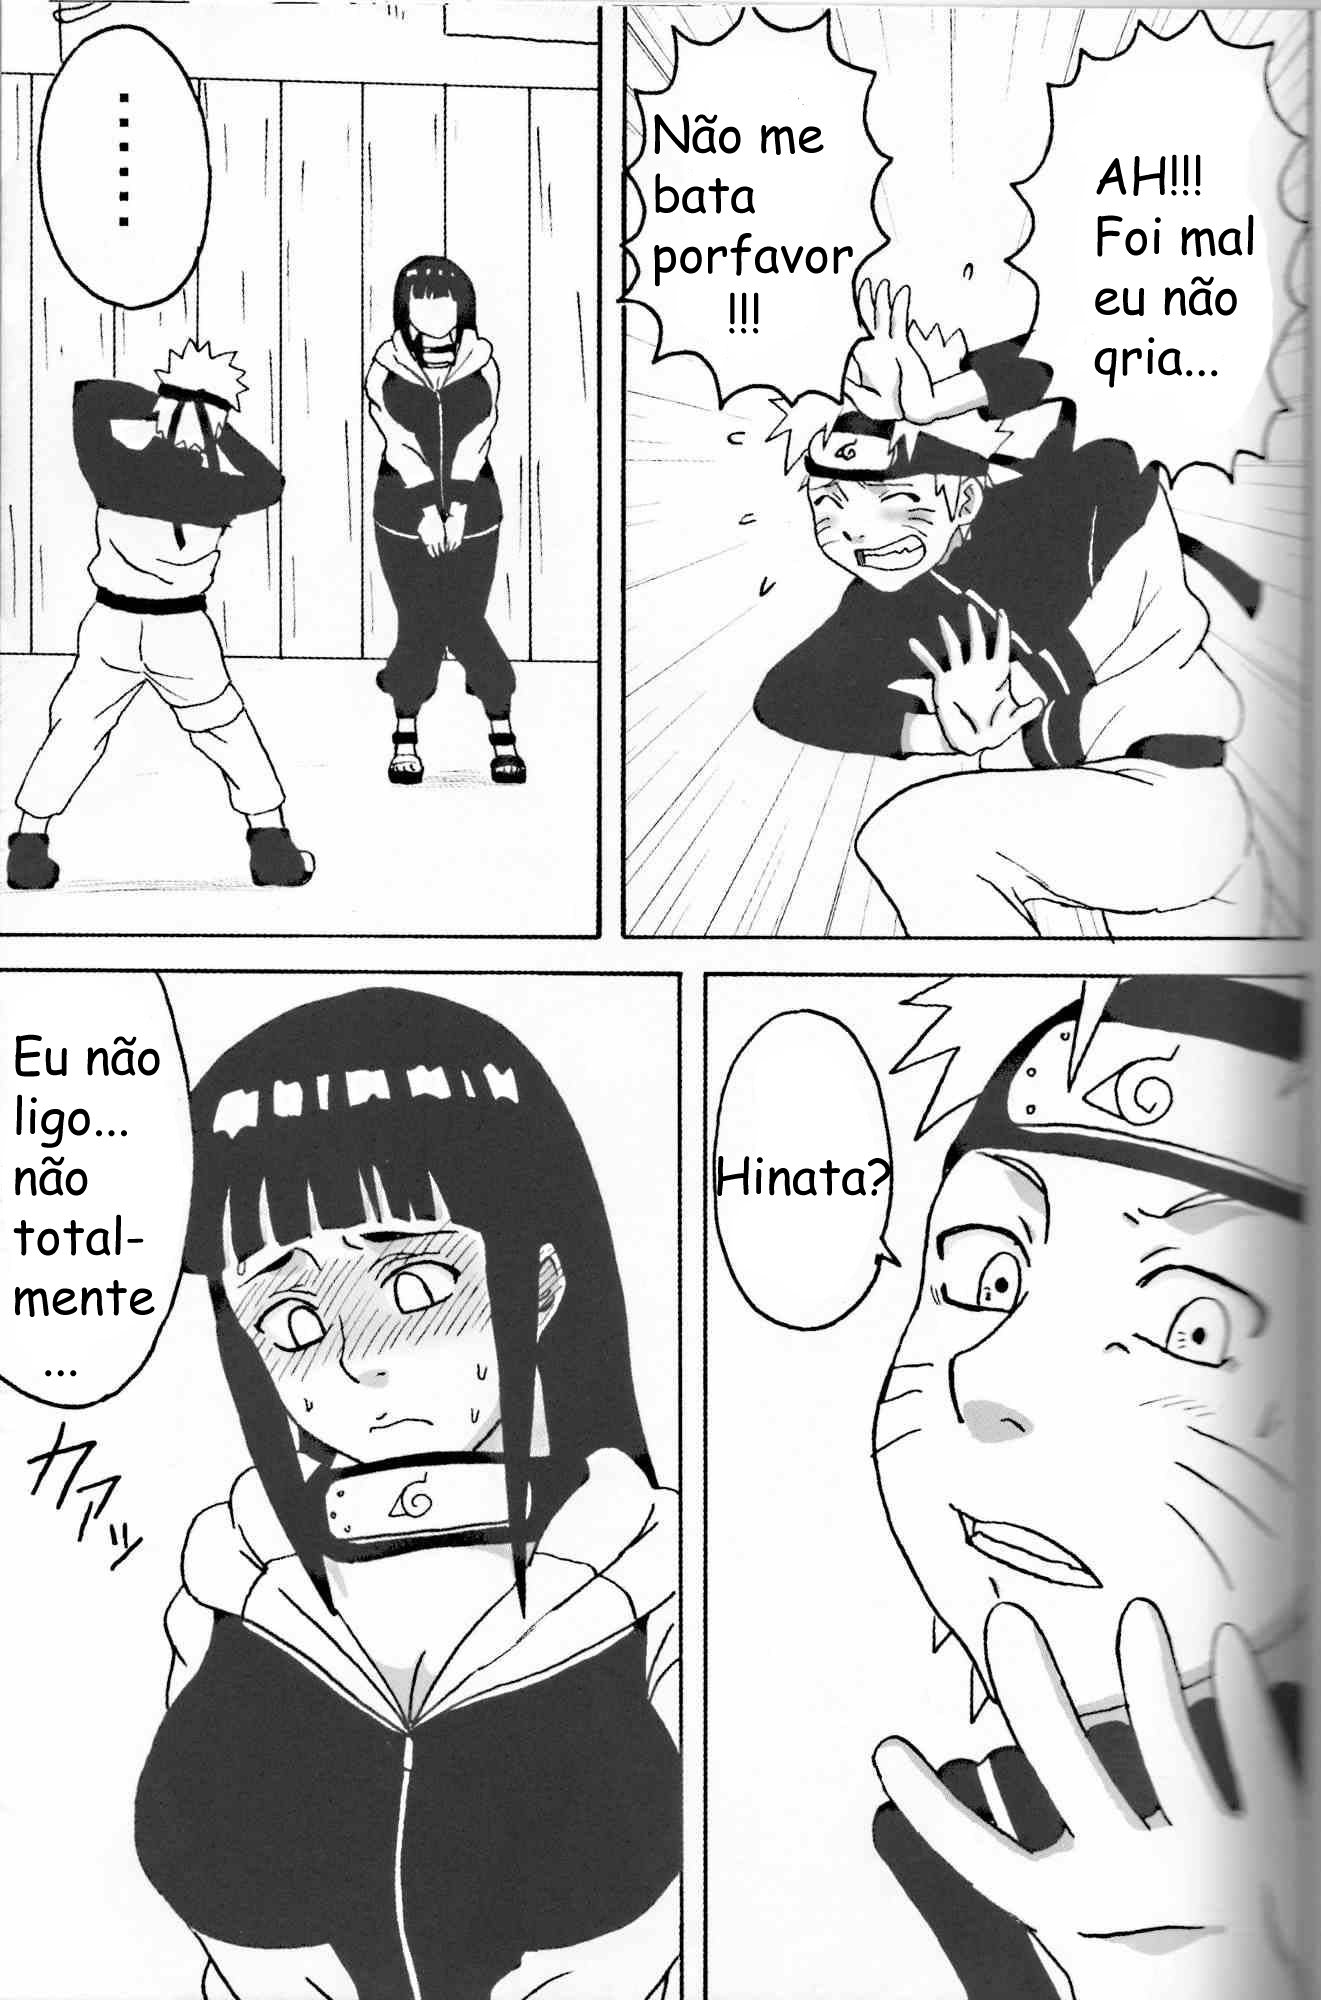 Hinata quer fazer sexo - Foto 4